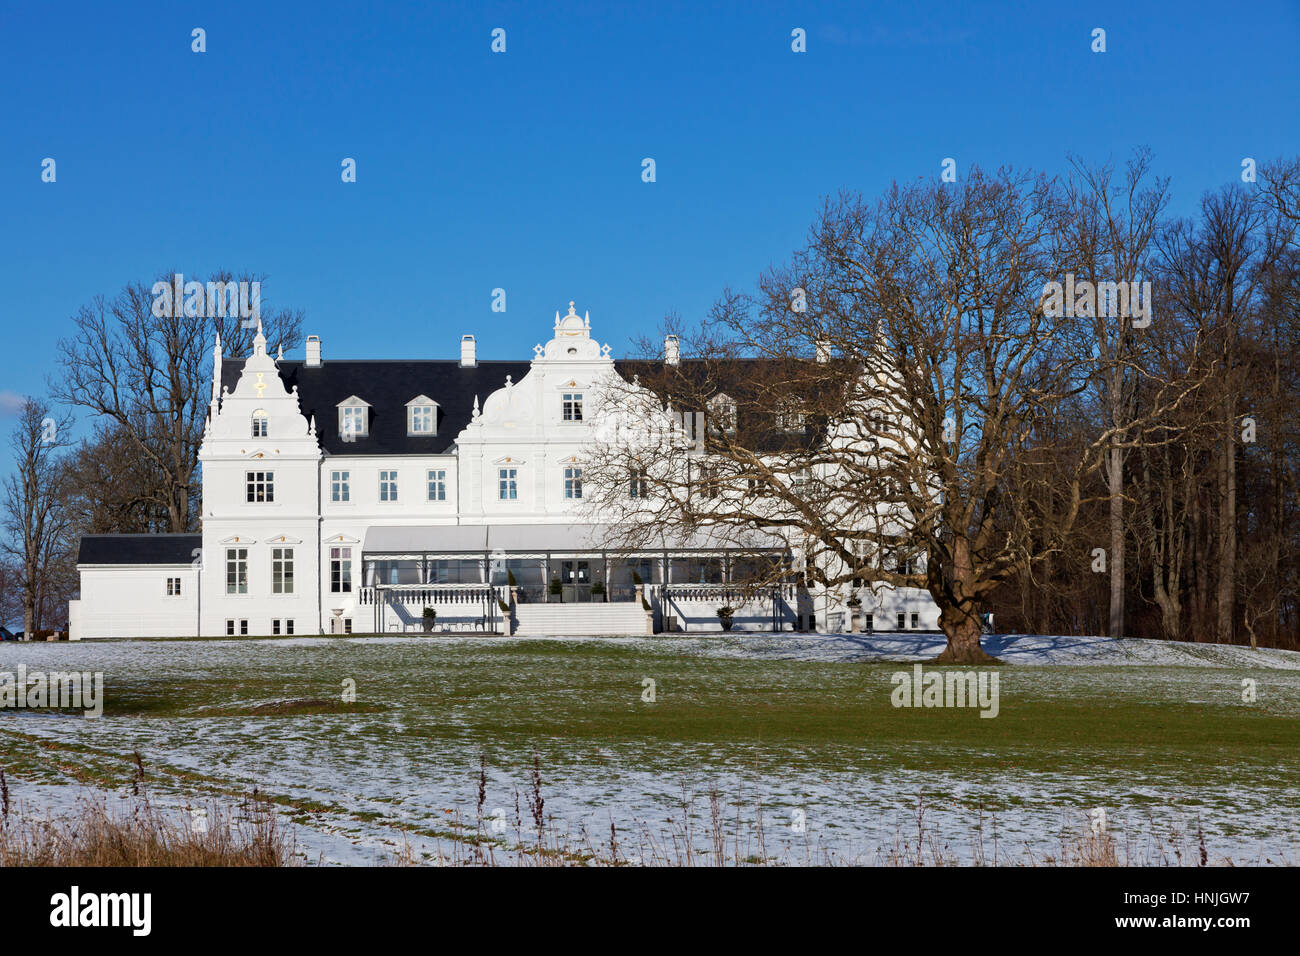 Kokkedal Schloss Kopenhagen, eine luxuriöse Schlosshotel in Winterlandschaft, einen großen, alten blattlosen Baum vor. Kokkedal zwischen Kopenhagen und Elsinore Stockfoto